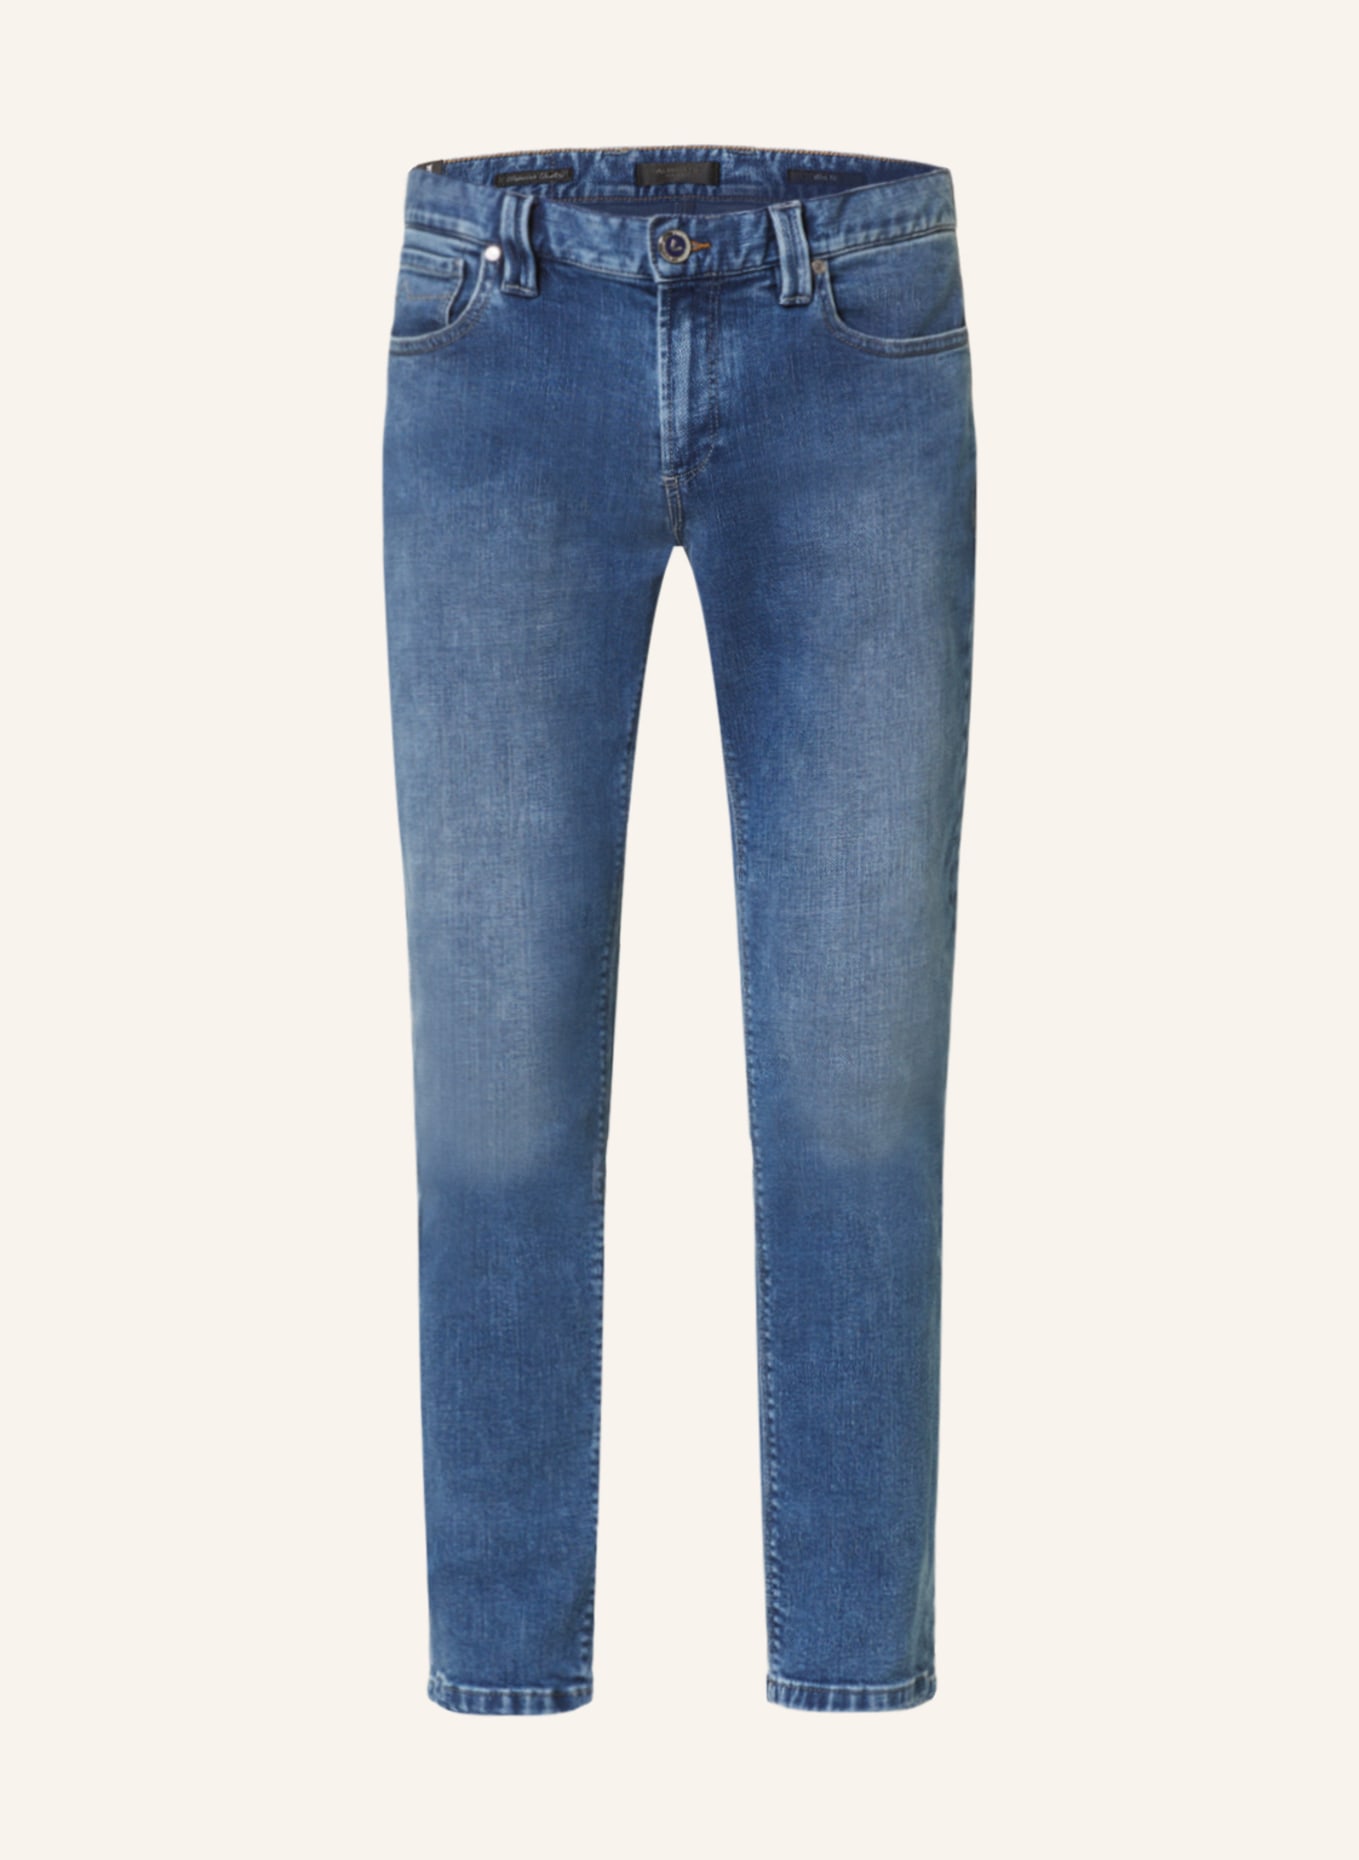 ALBERTO Jeans SLIM Slim Fit, Farbe: 838 (Bild 1)